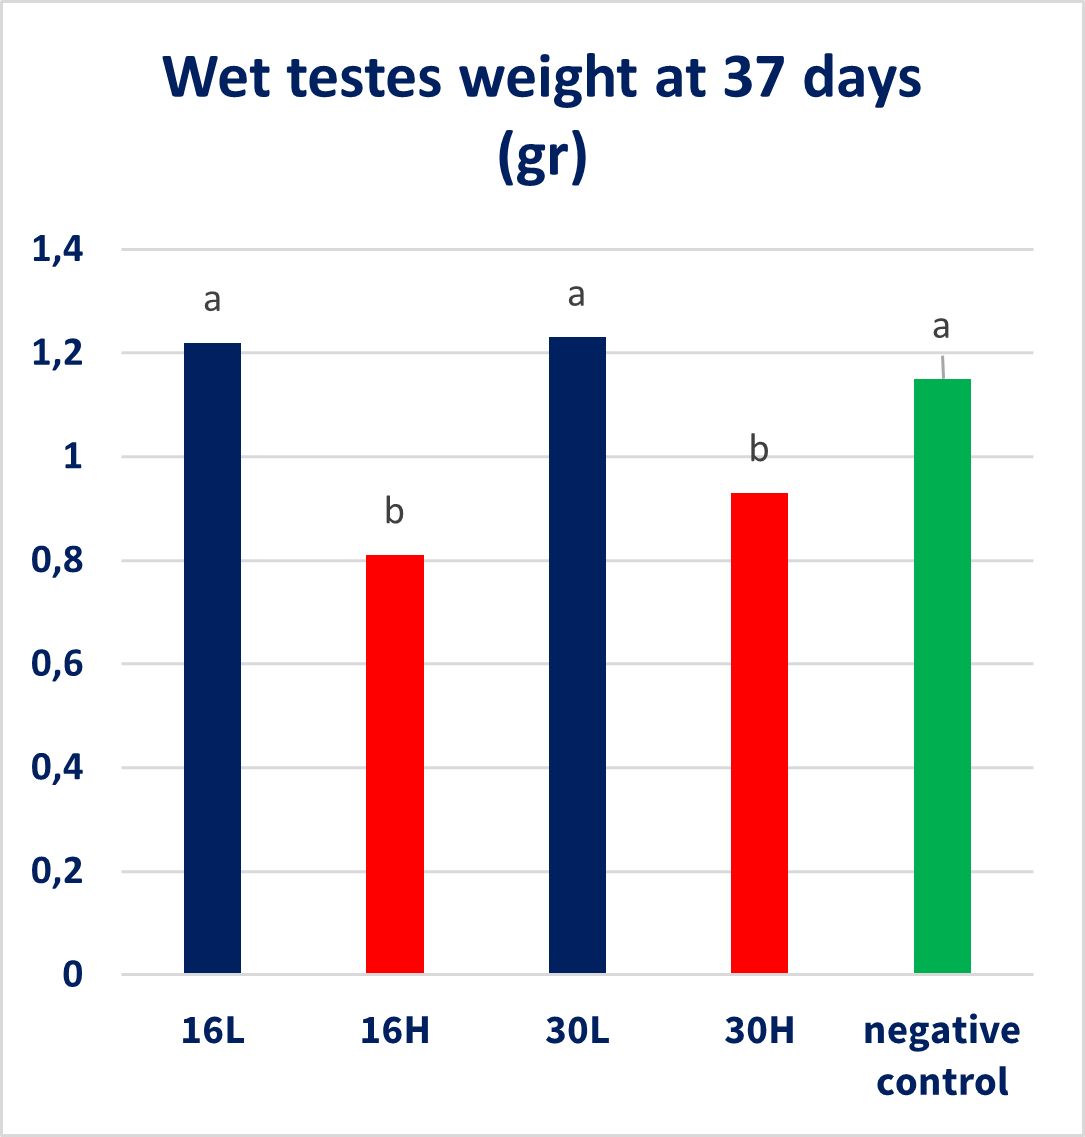 Wet testes